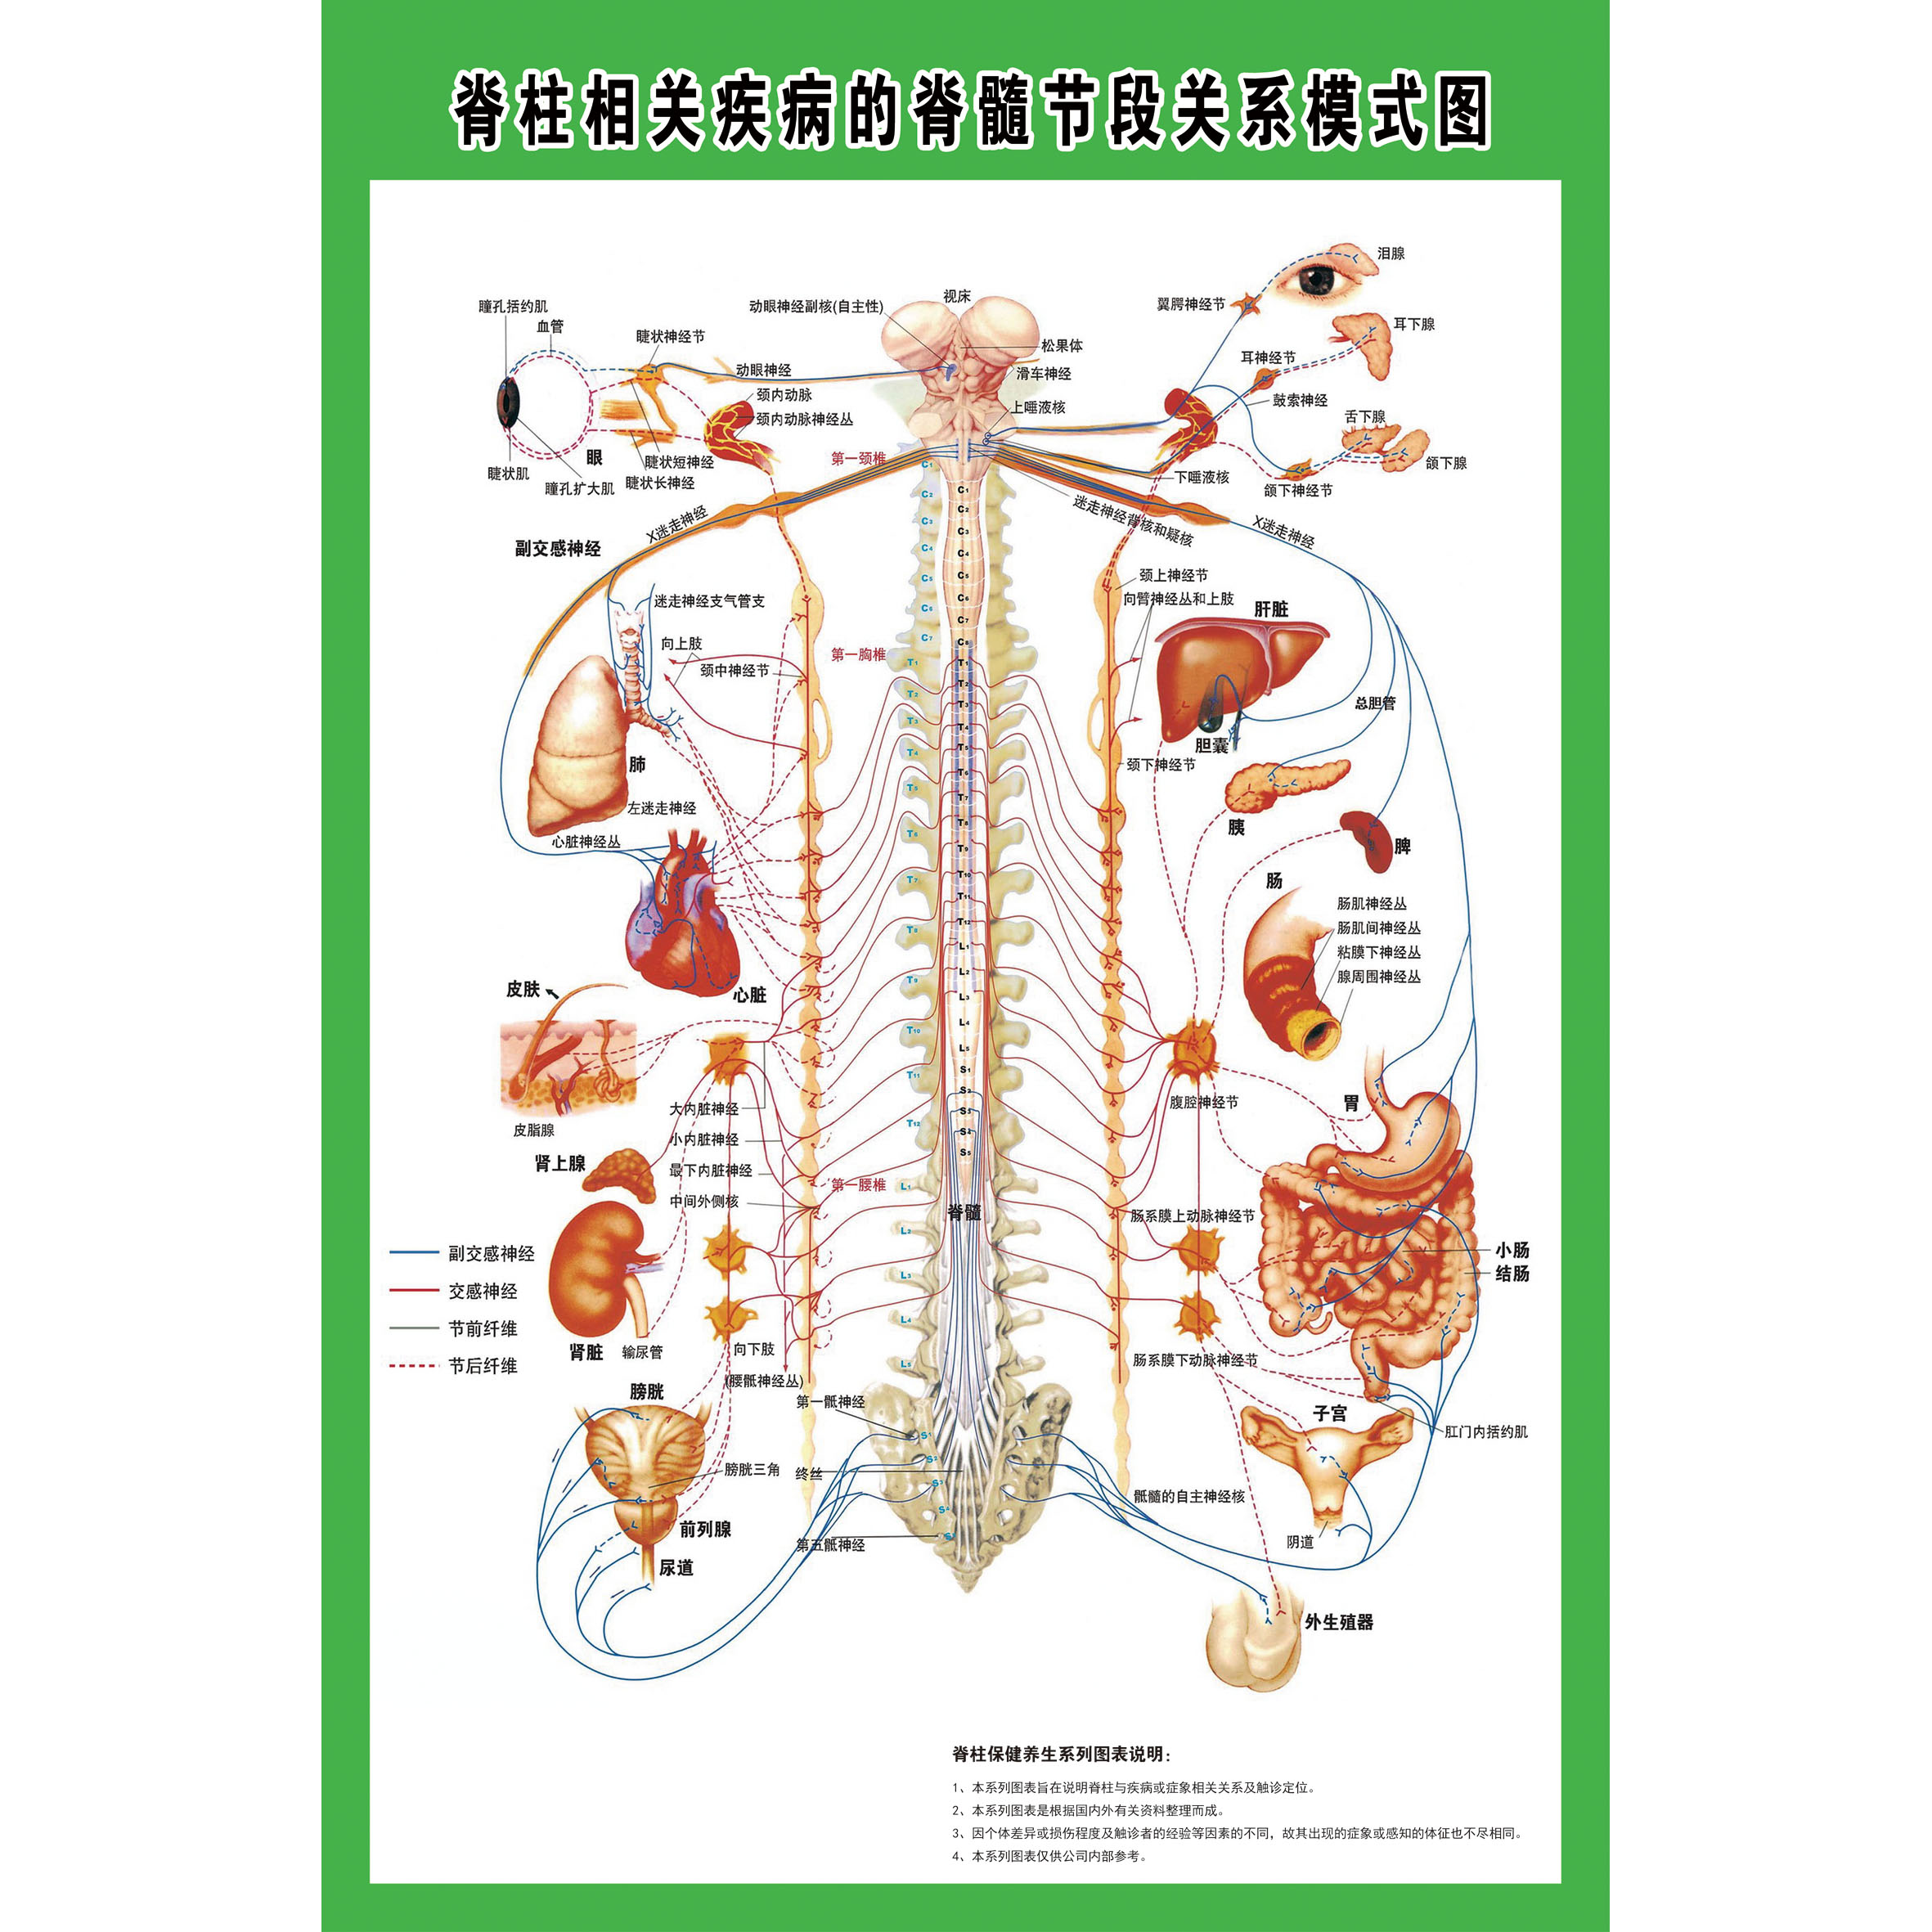 脊椎相关疾病的脊髓节段关系模式图示意图人体解剖图海报挂图展板